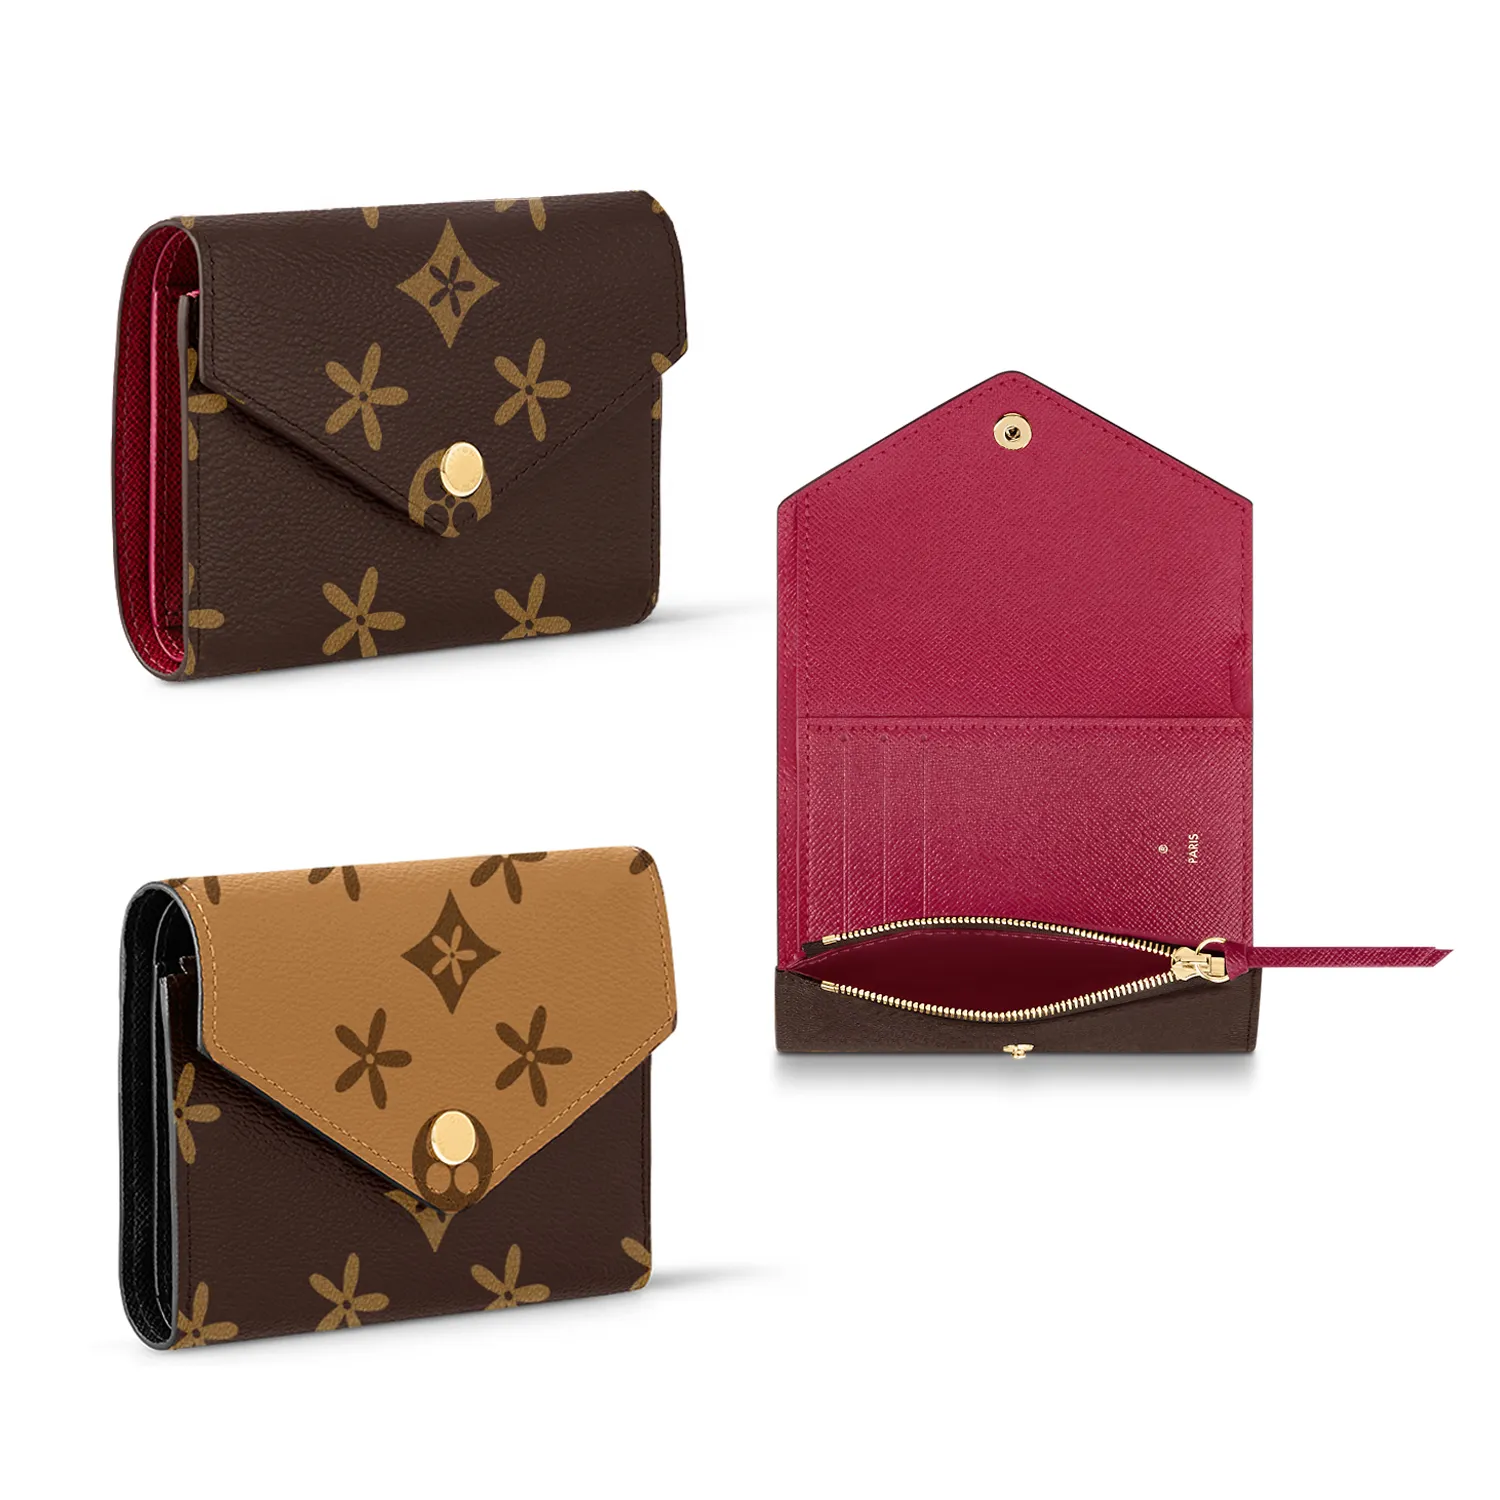 Man kvinnor plånböcker mynt handväska korthållare lyxdesigner läder brun blomma m41938 Victorine plånbok toppkvalitet kreditkortskorthållare kedja purses nyckelpåse gåva